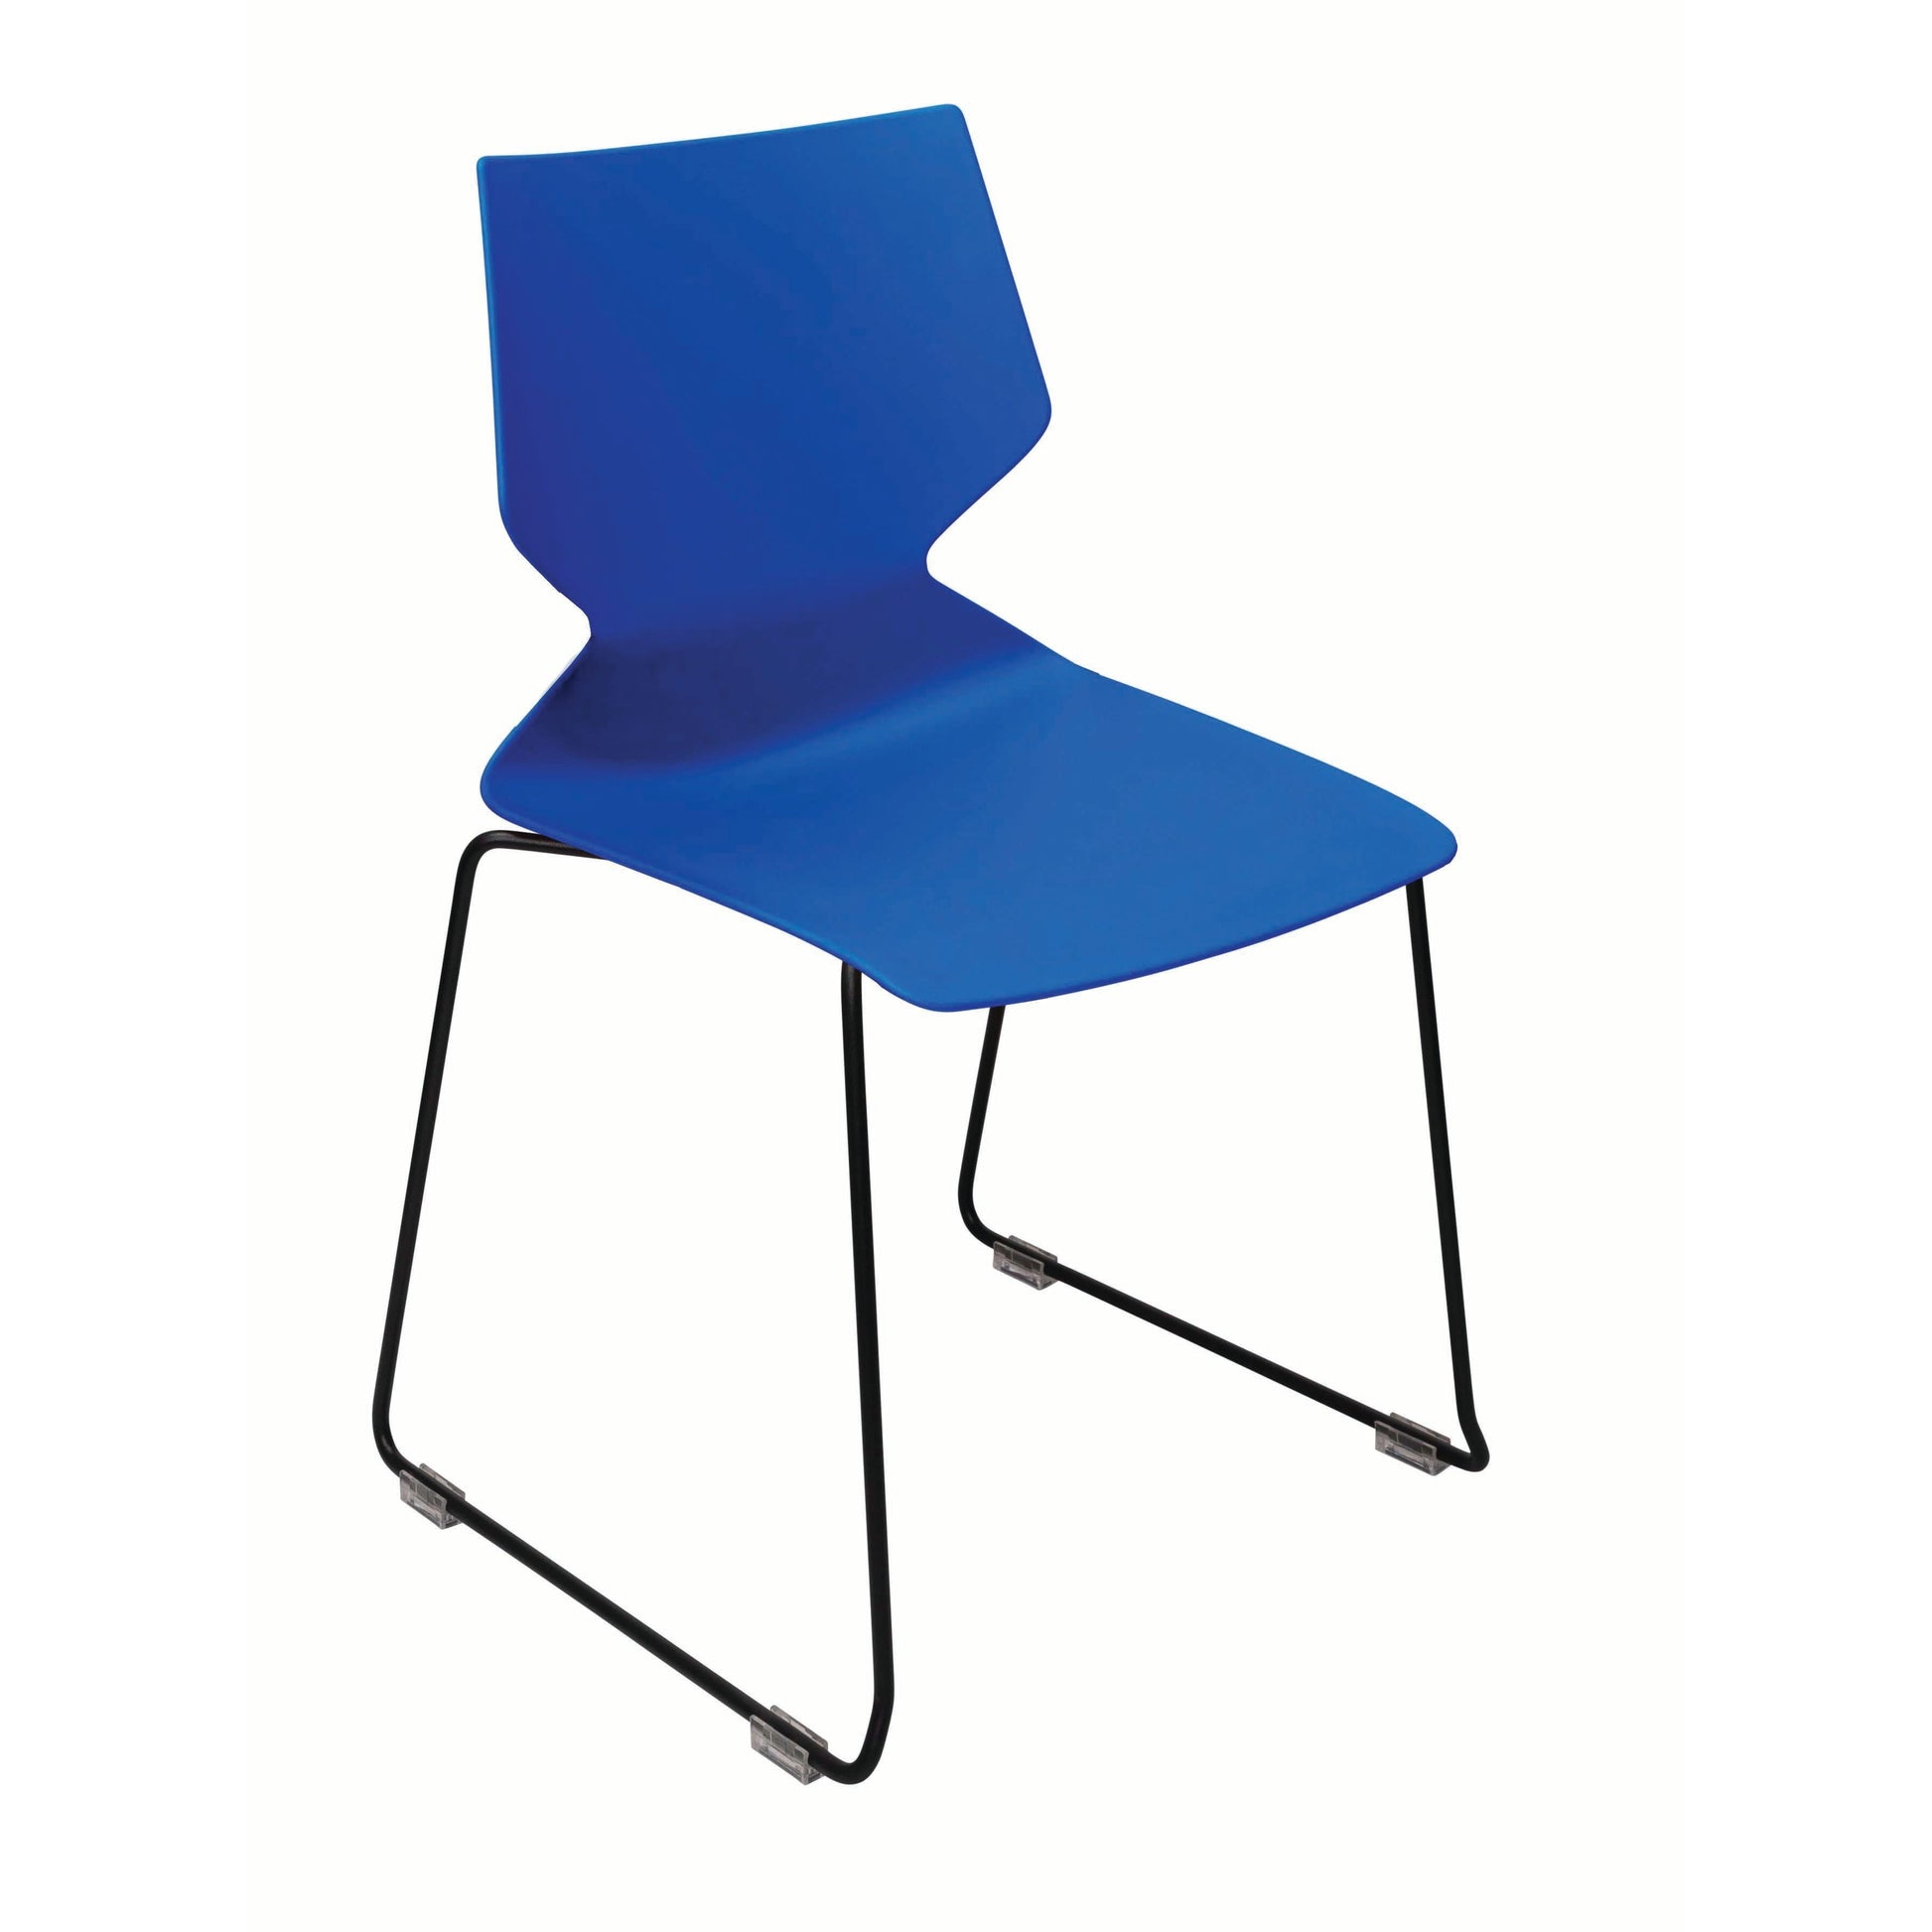 Konfurb Fly - Sled Base - Black Frame-Stackable seating-Smart Office Furniture